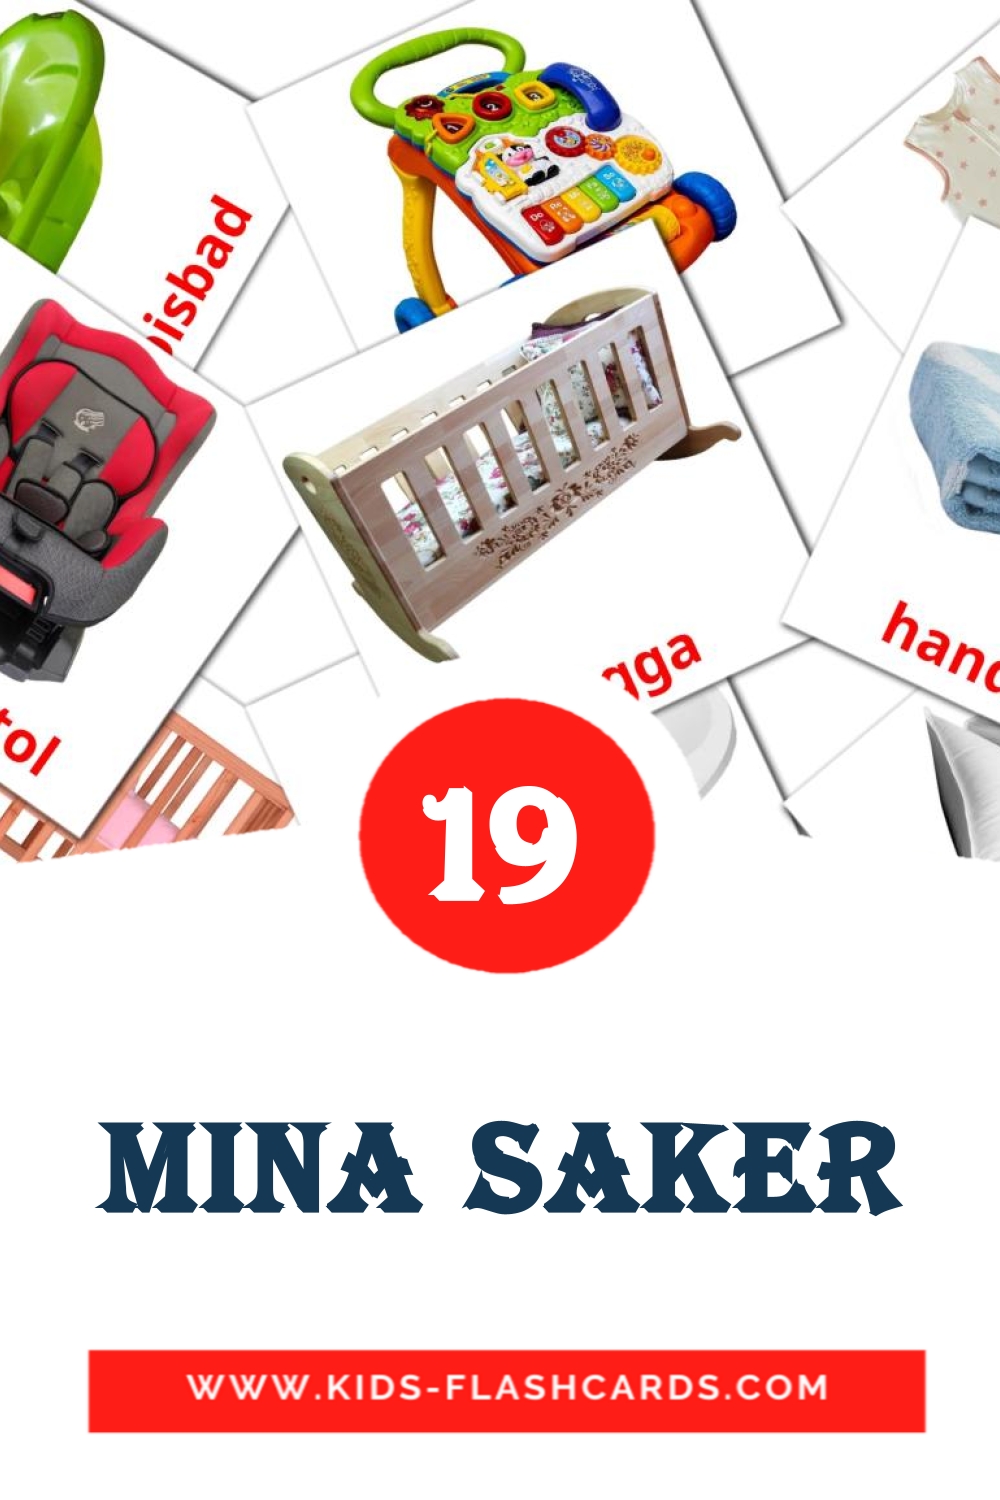 19 Mina saker fotokaarten voor kleuters in het zweeds